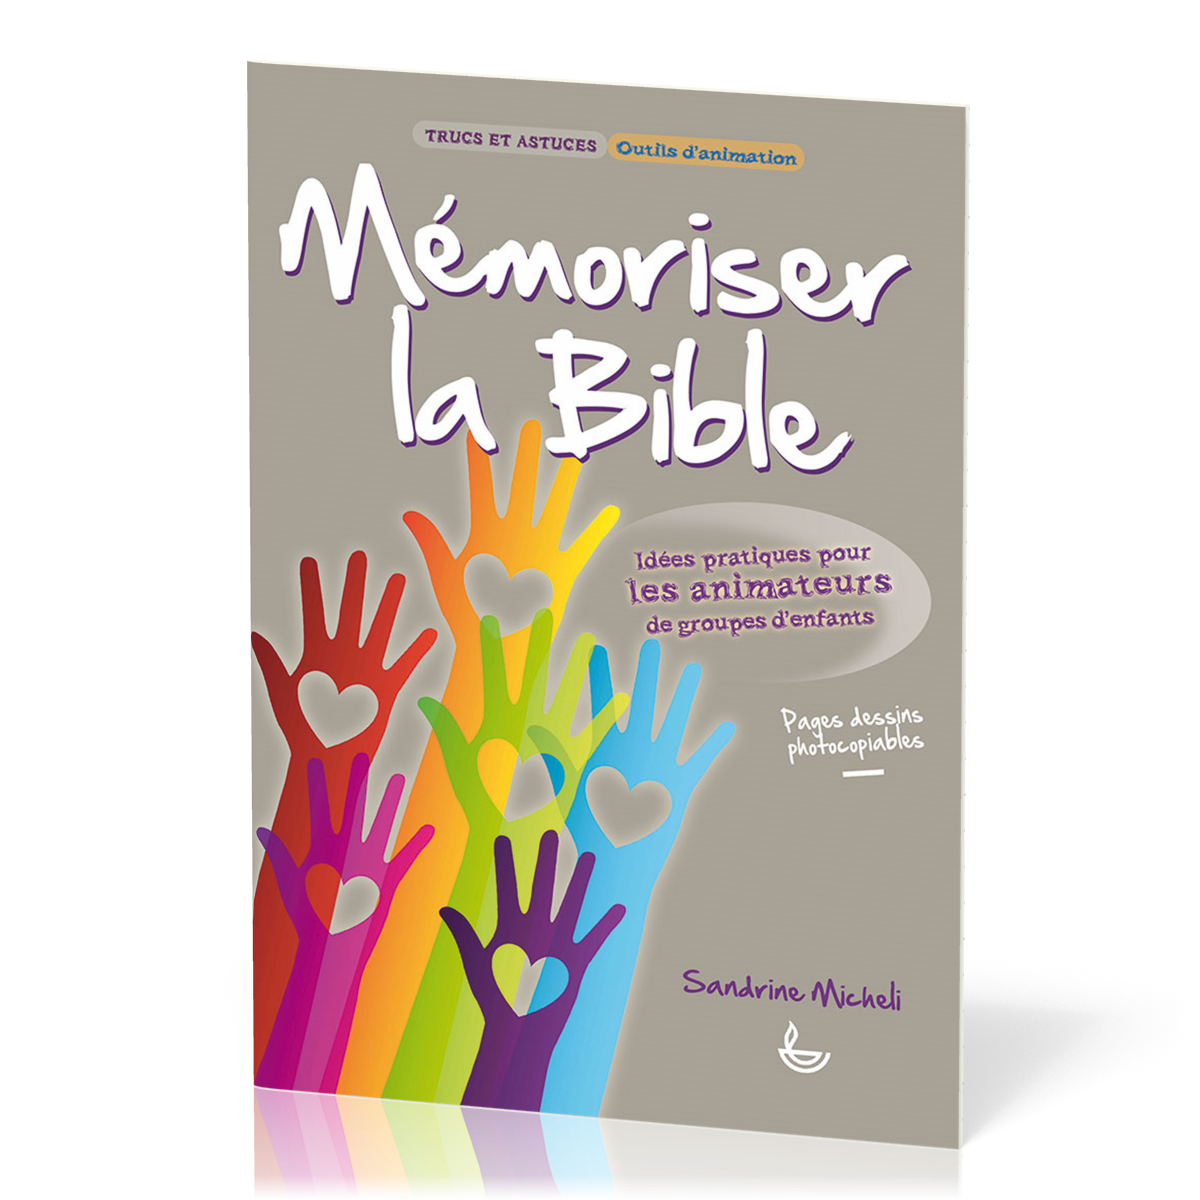 Mémoriser la Bible  - Idées pratiques pour les animateurs de groupes d'enfants [Trucs et astuces, Outils d'animation]